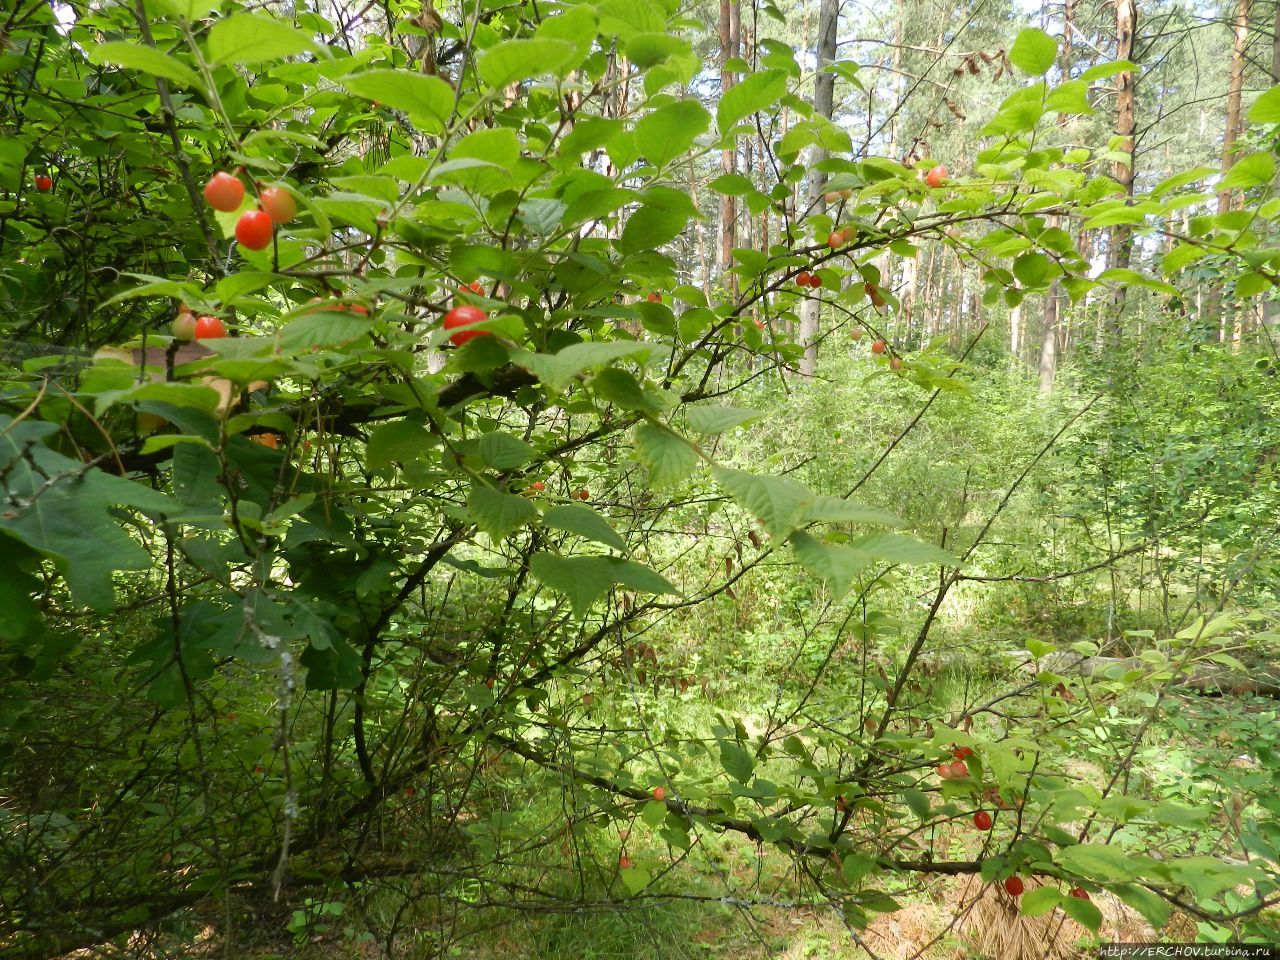 Шумел черешней брянский лес Брянская область, Россия